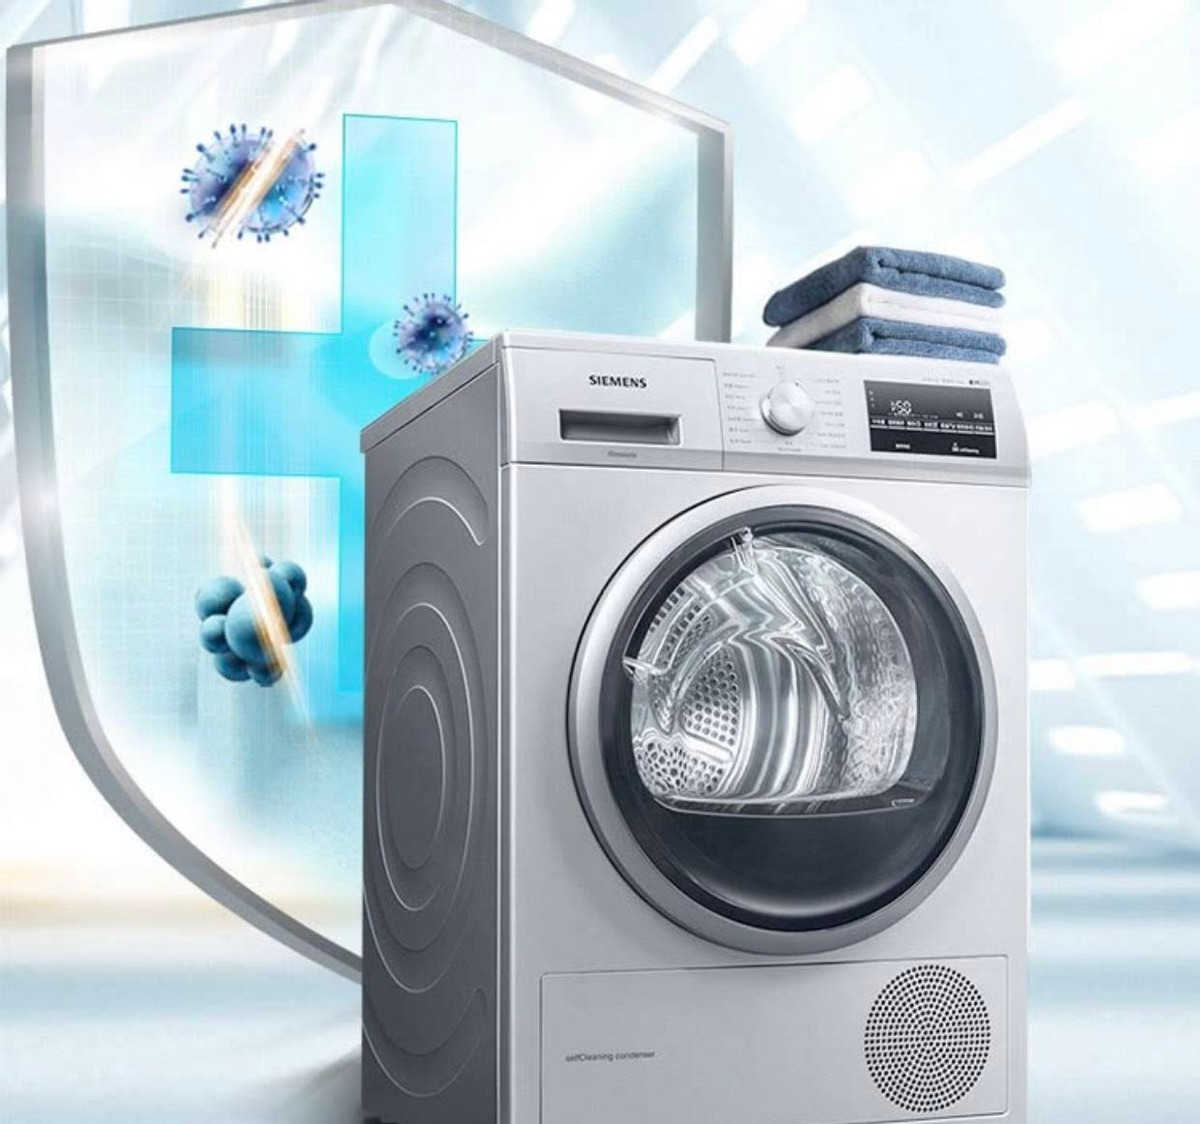 从品牌型号到技术，一文教你看懂西门子洗烘套装，附双11优惠活动